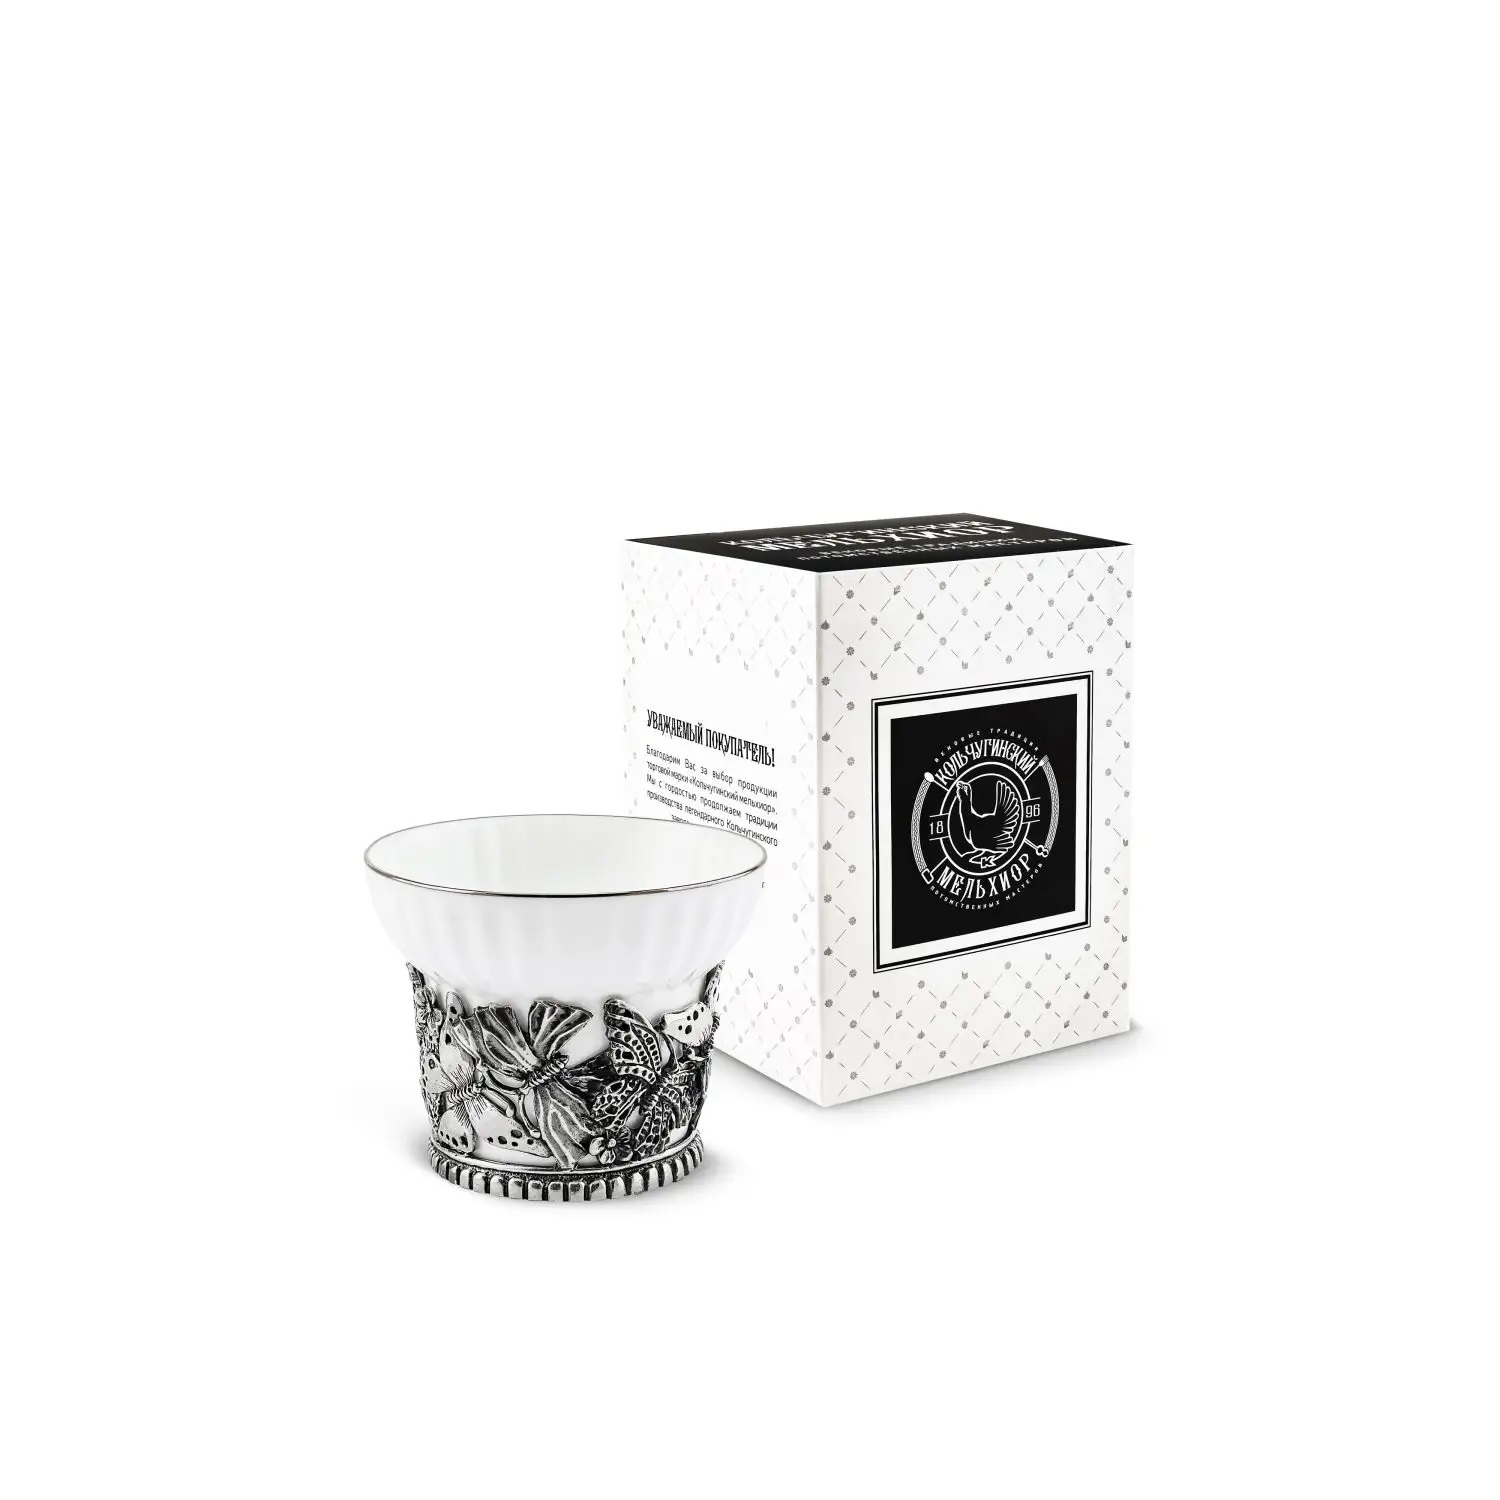 Посеребренная чайная чашка Бабочки с чернениемФото 25889-02.jpg